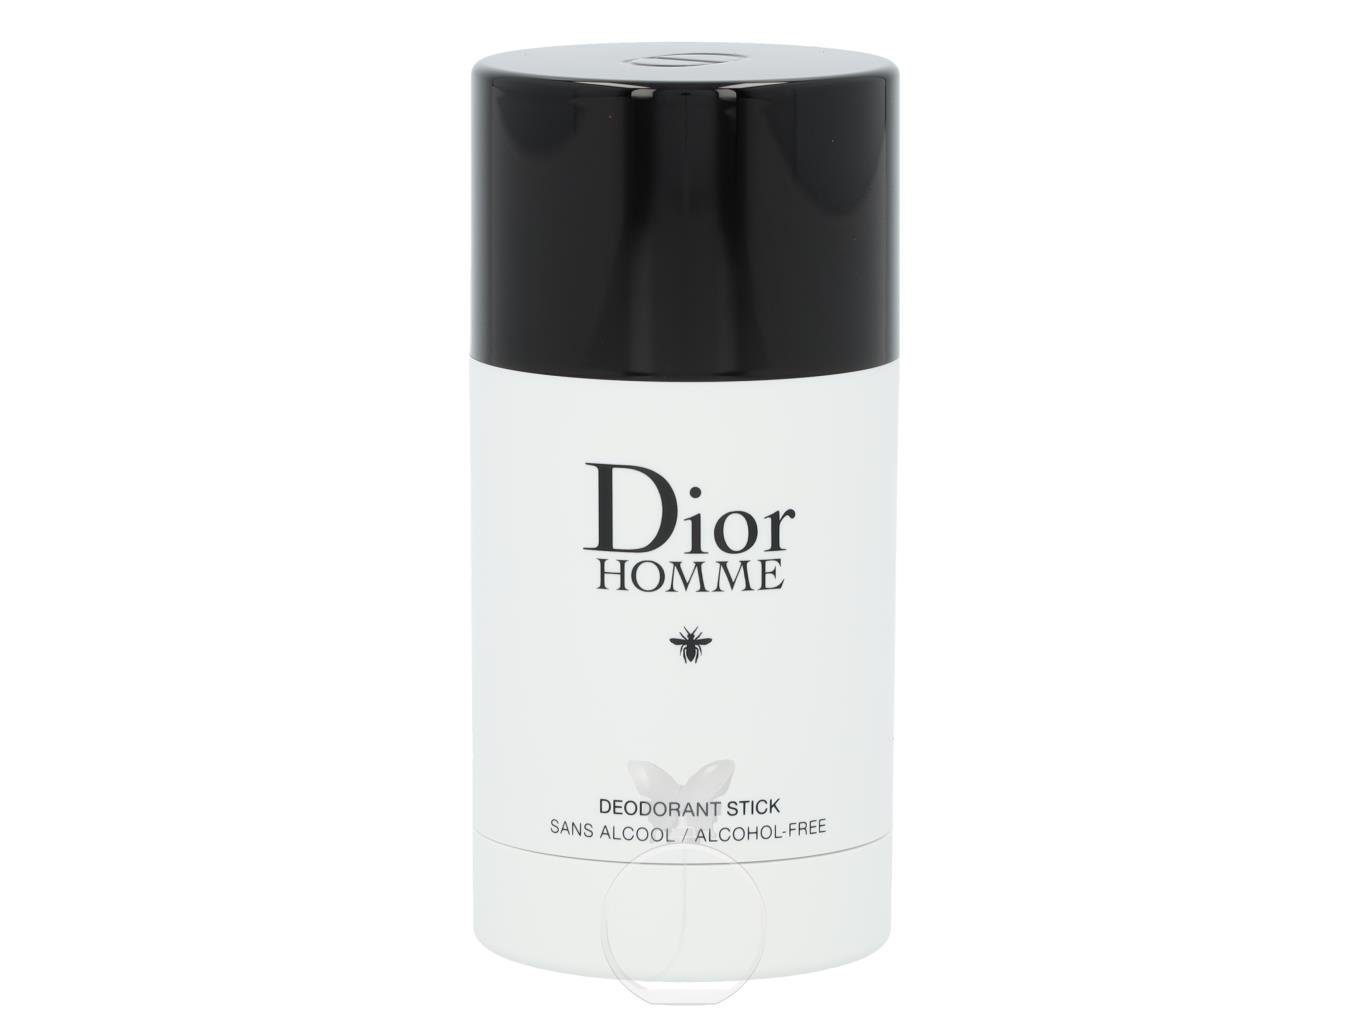 Dior Körperpflegeduft Dior Homme Deostick 75 ml